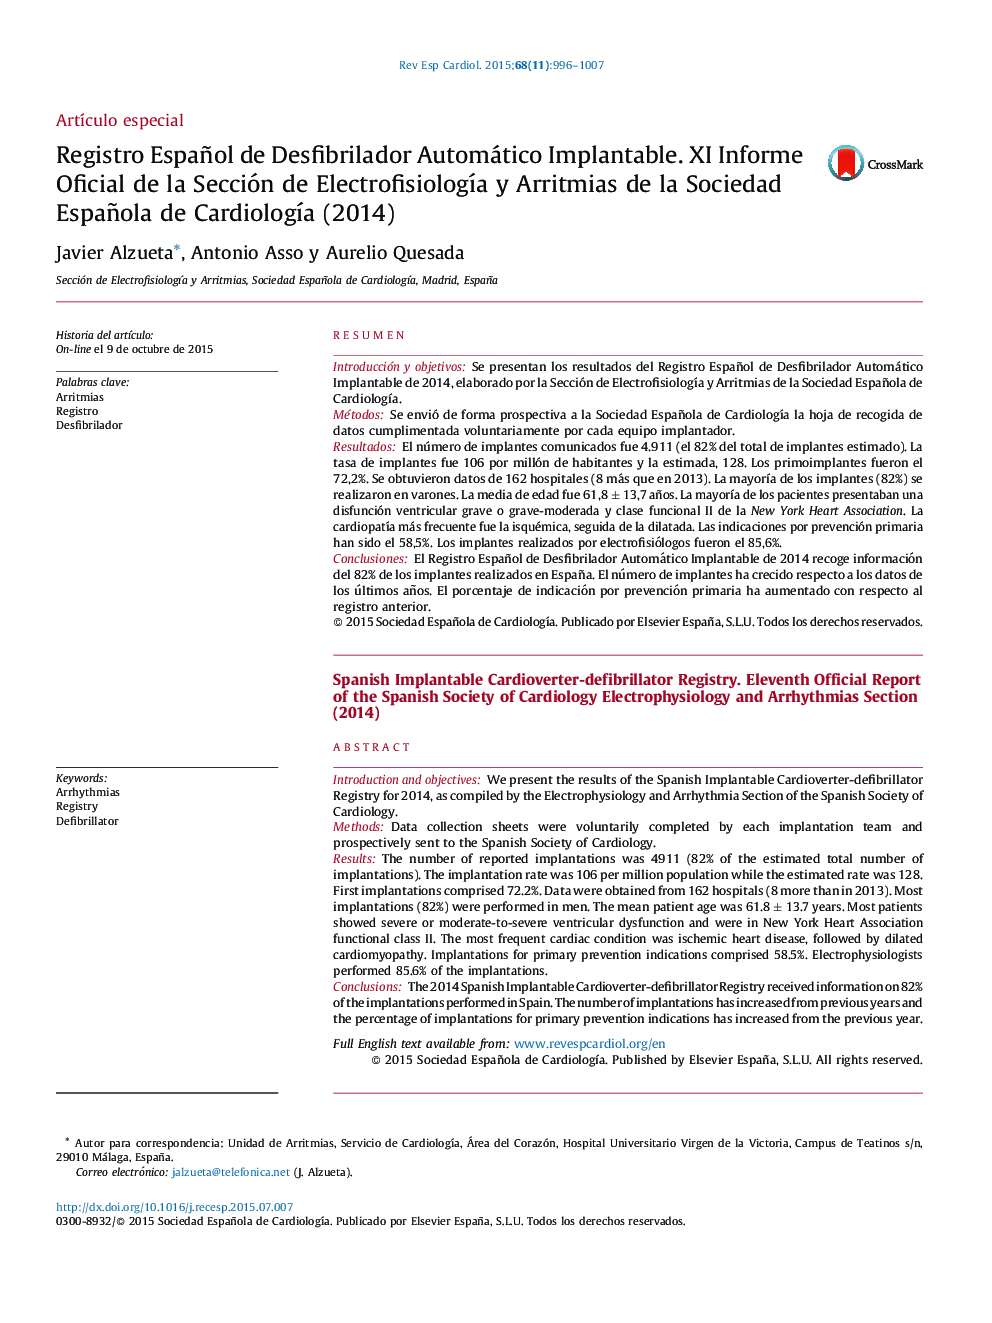 Registro Español de Desfibrilador Automático Implantable. XI Informe Oficial de la Sección de ElectrofisiologÃ­a y Arritmias de la Sociedad Española de CardiologÃ­a (2014)